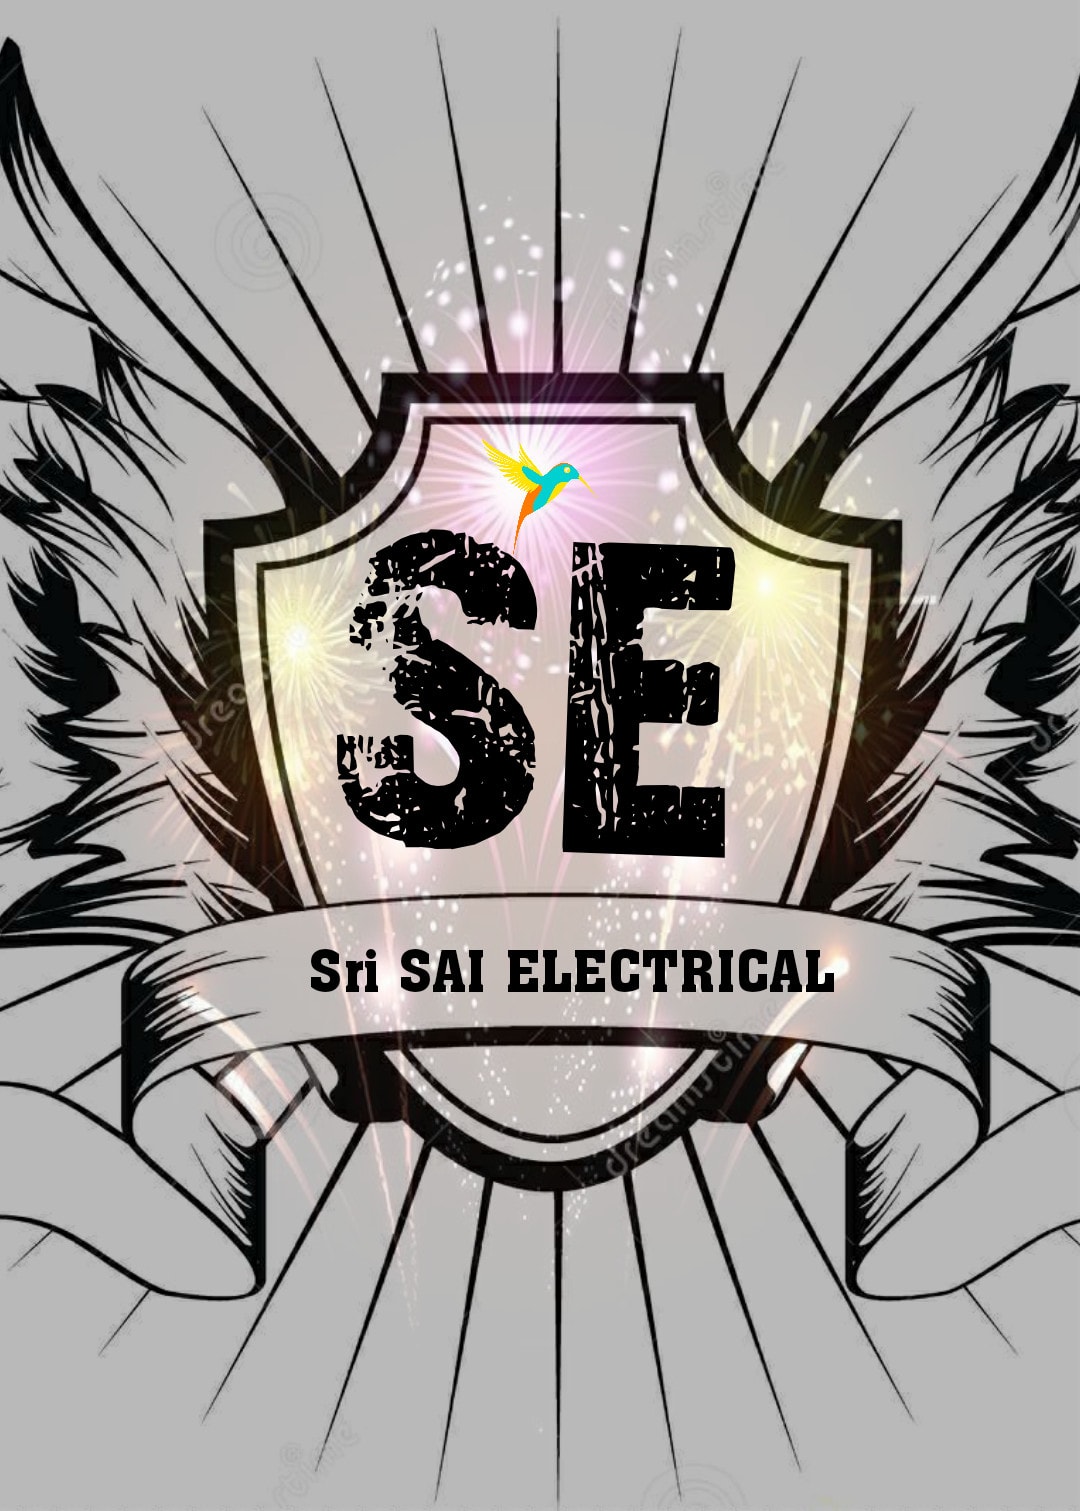 Sri Sai Electricals